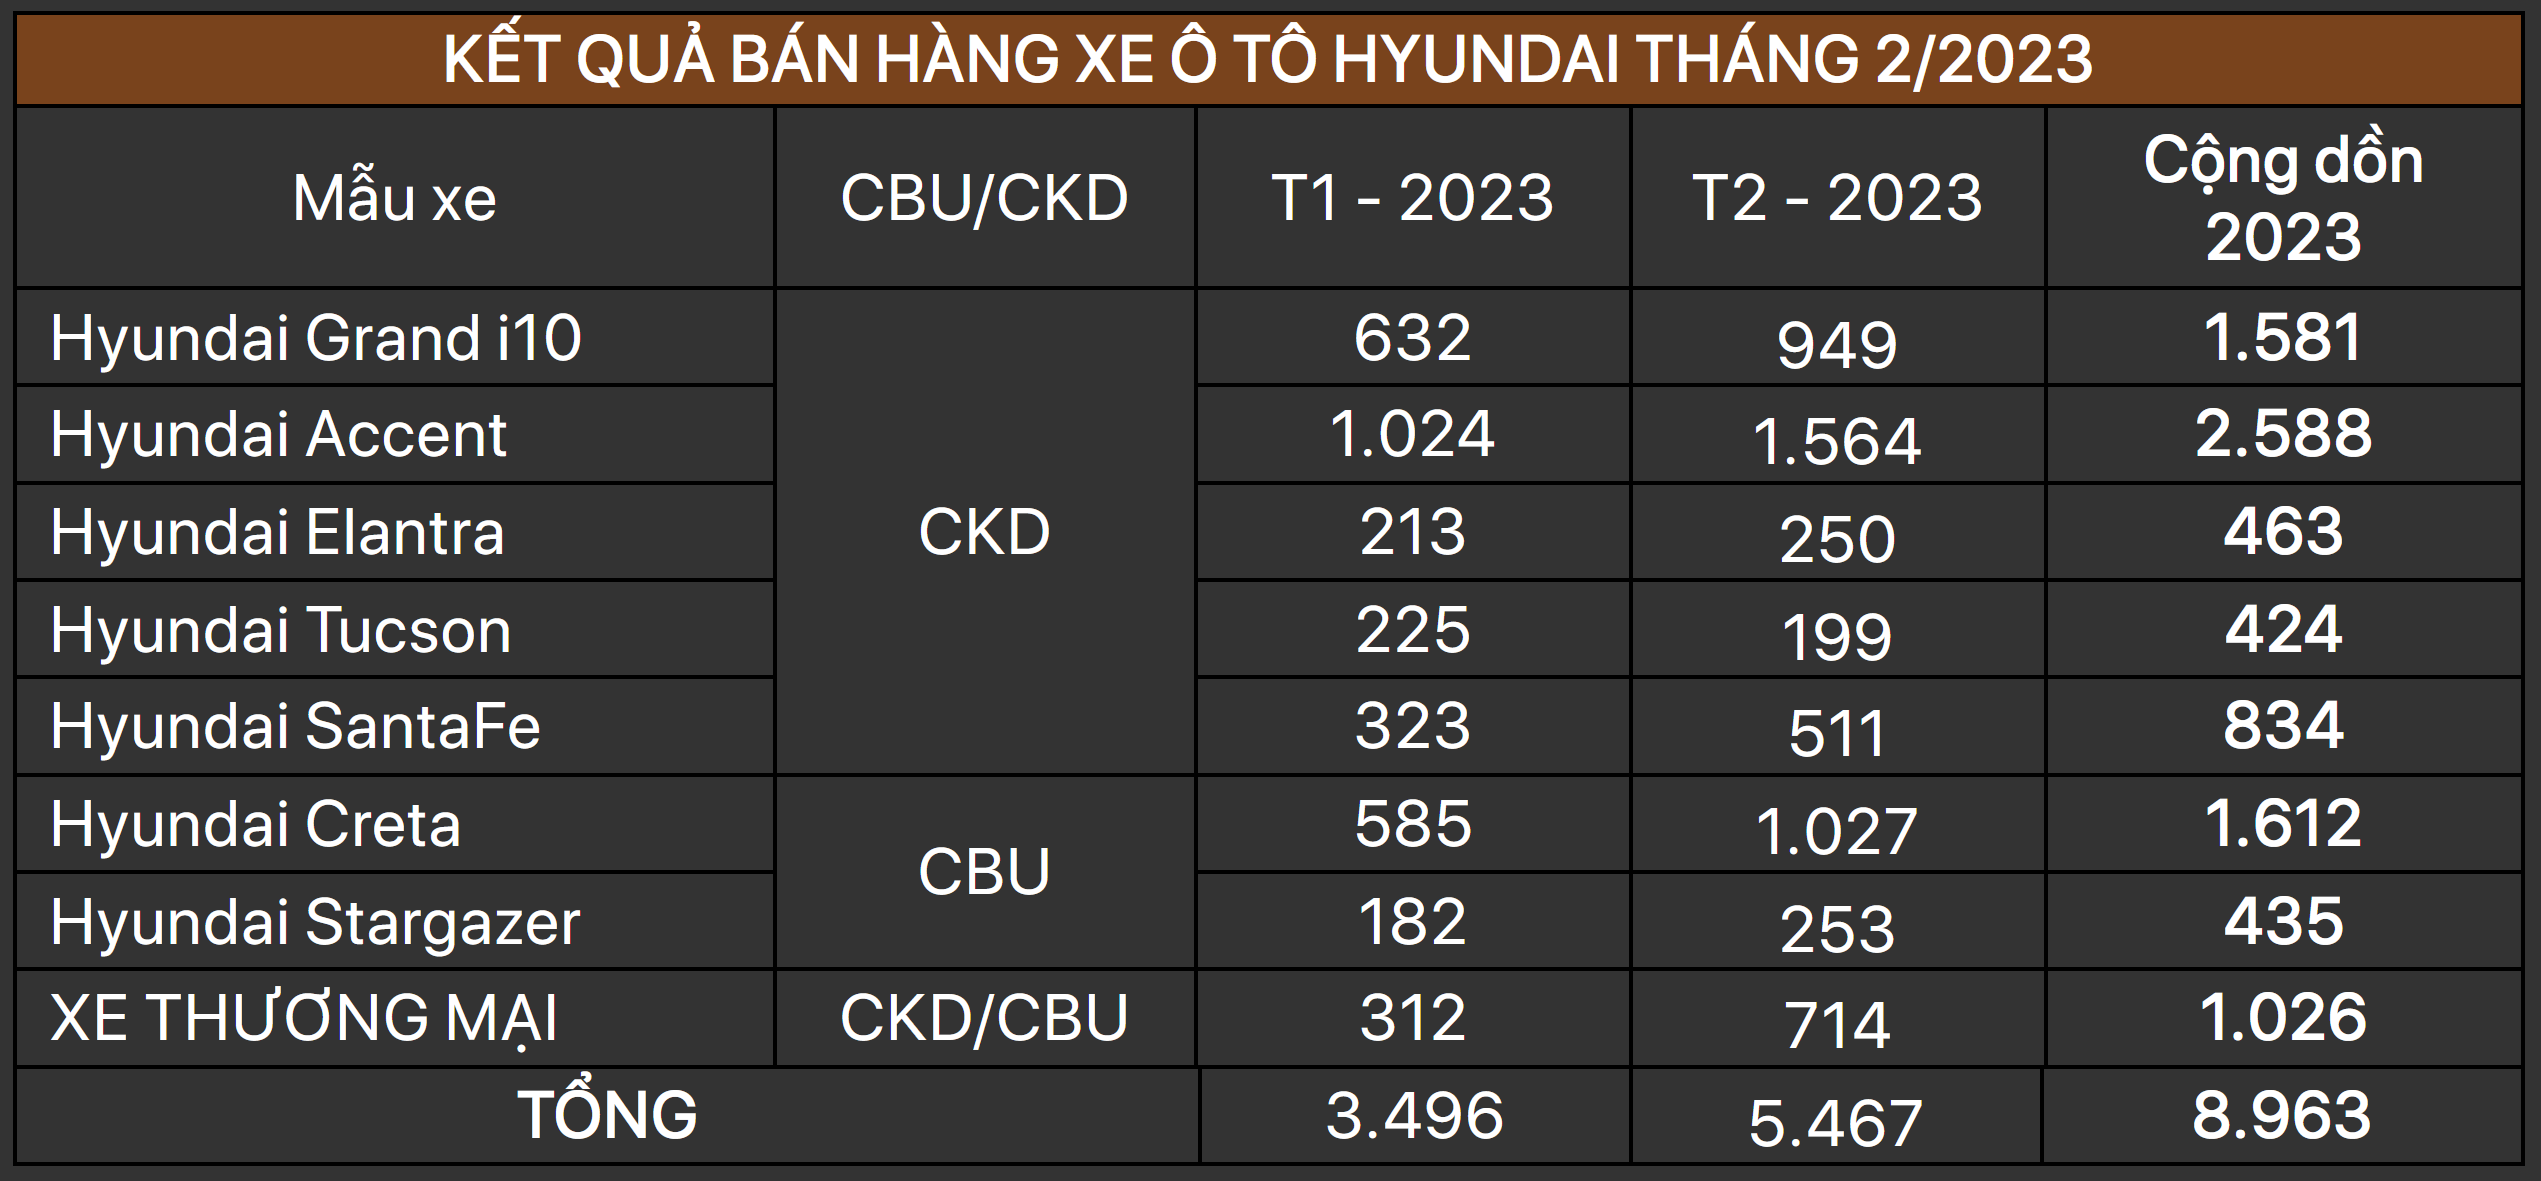 doanhso-hyundai-t2-2023.png